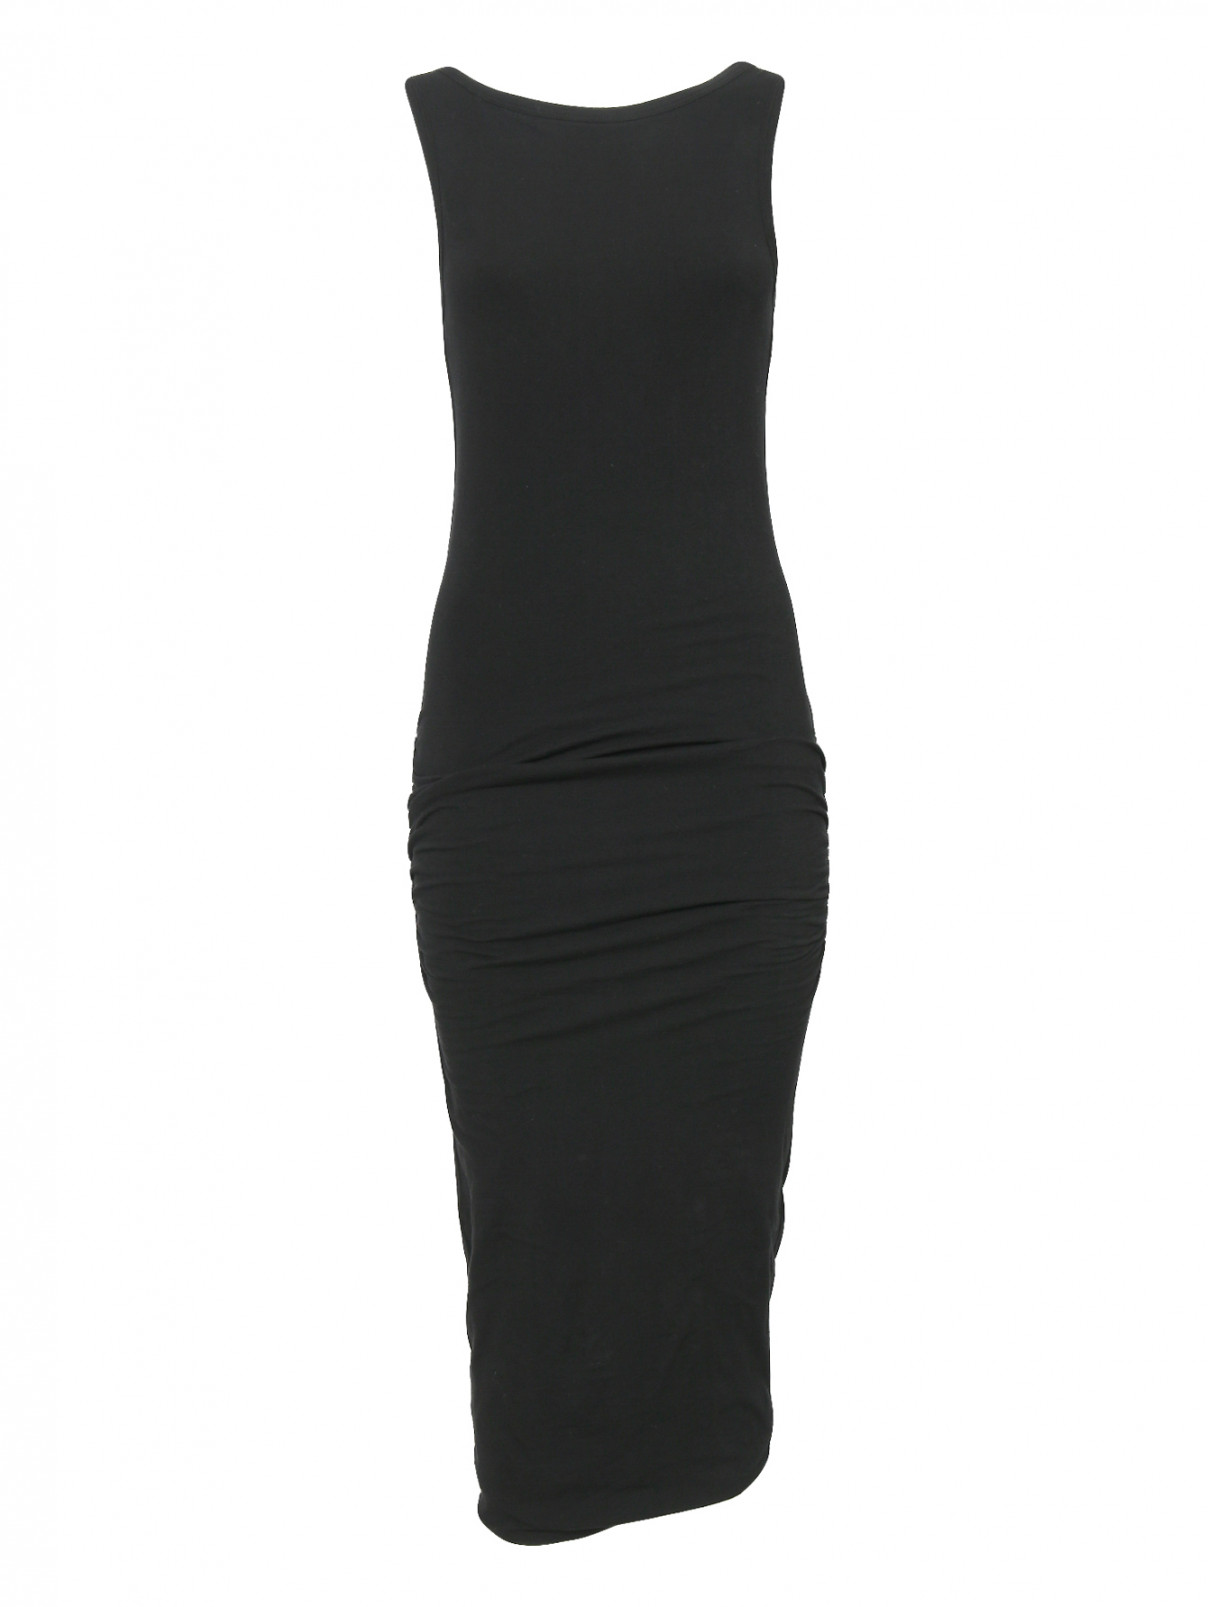 Трикотажное платье из хлопка без рукавов James Perse  –  Общий вид  – Цвет:  Черный